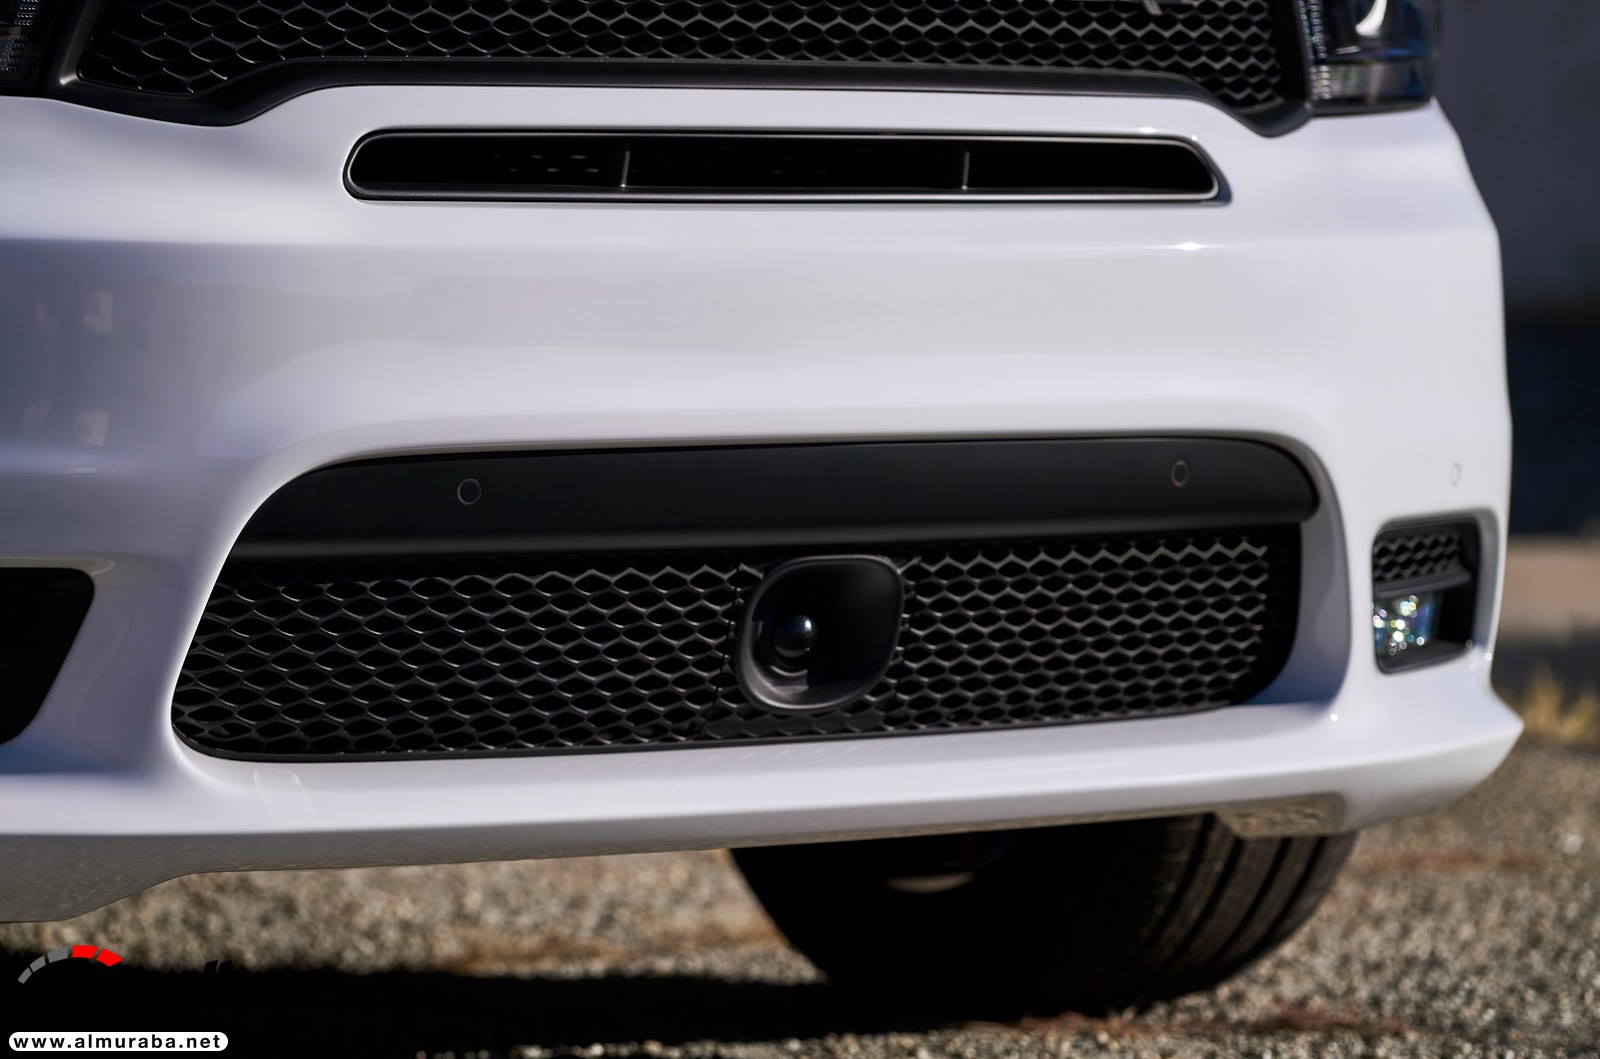 "دودج" دورانجو إس آر تي الجديدة كليا 2018 يكشف عنها بمحرك 475 حصان Dodge Durango SRT 168